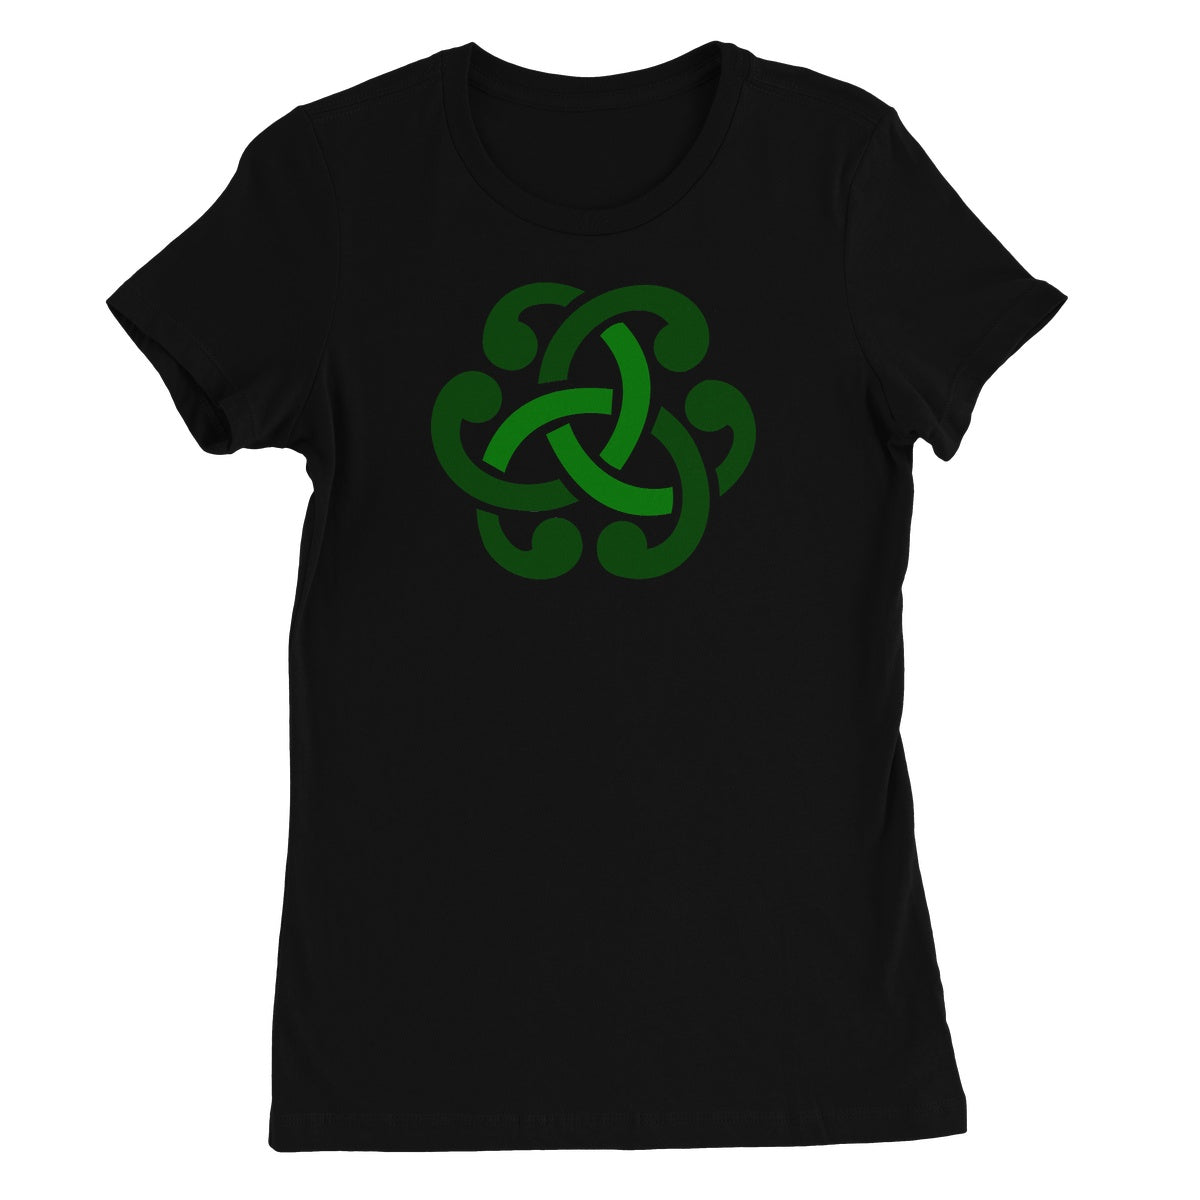 Green Celtic Knot Women's T-Shirt